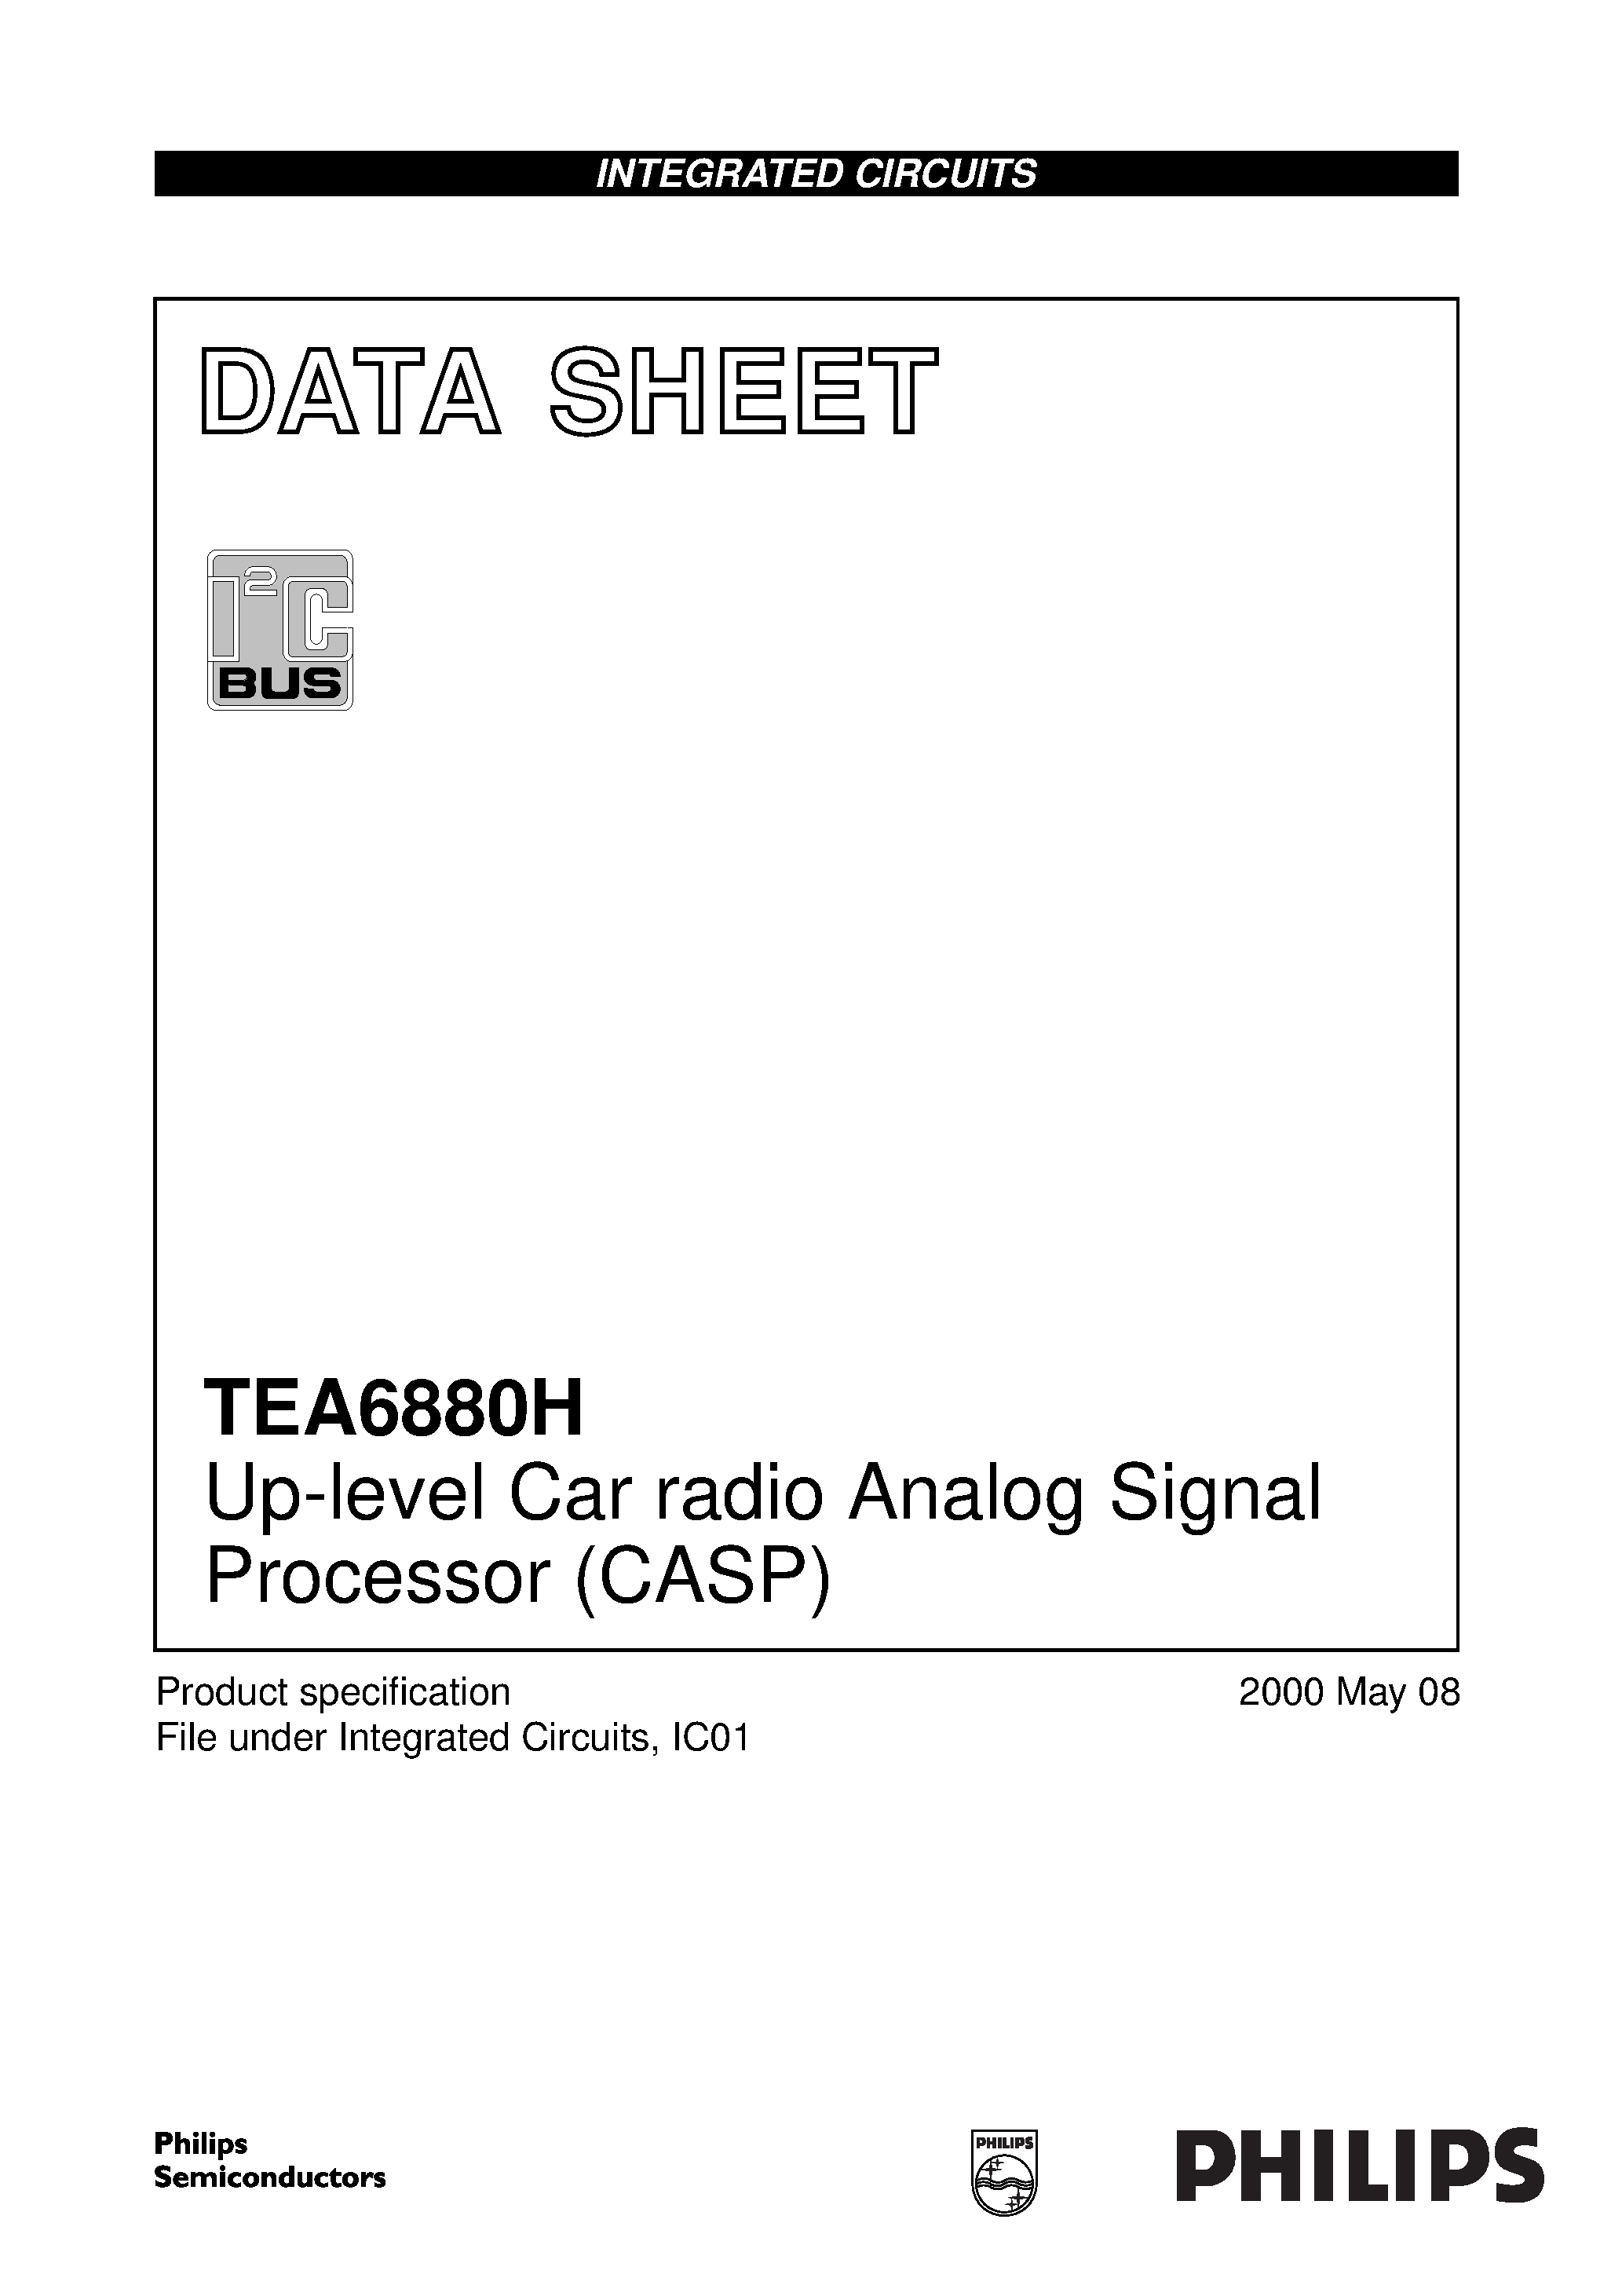 Даташит TEA6880H - Up-level Car radio Analog Signal Processor CASP страница 1